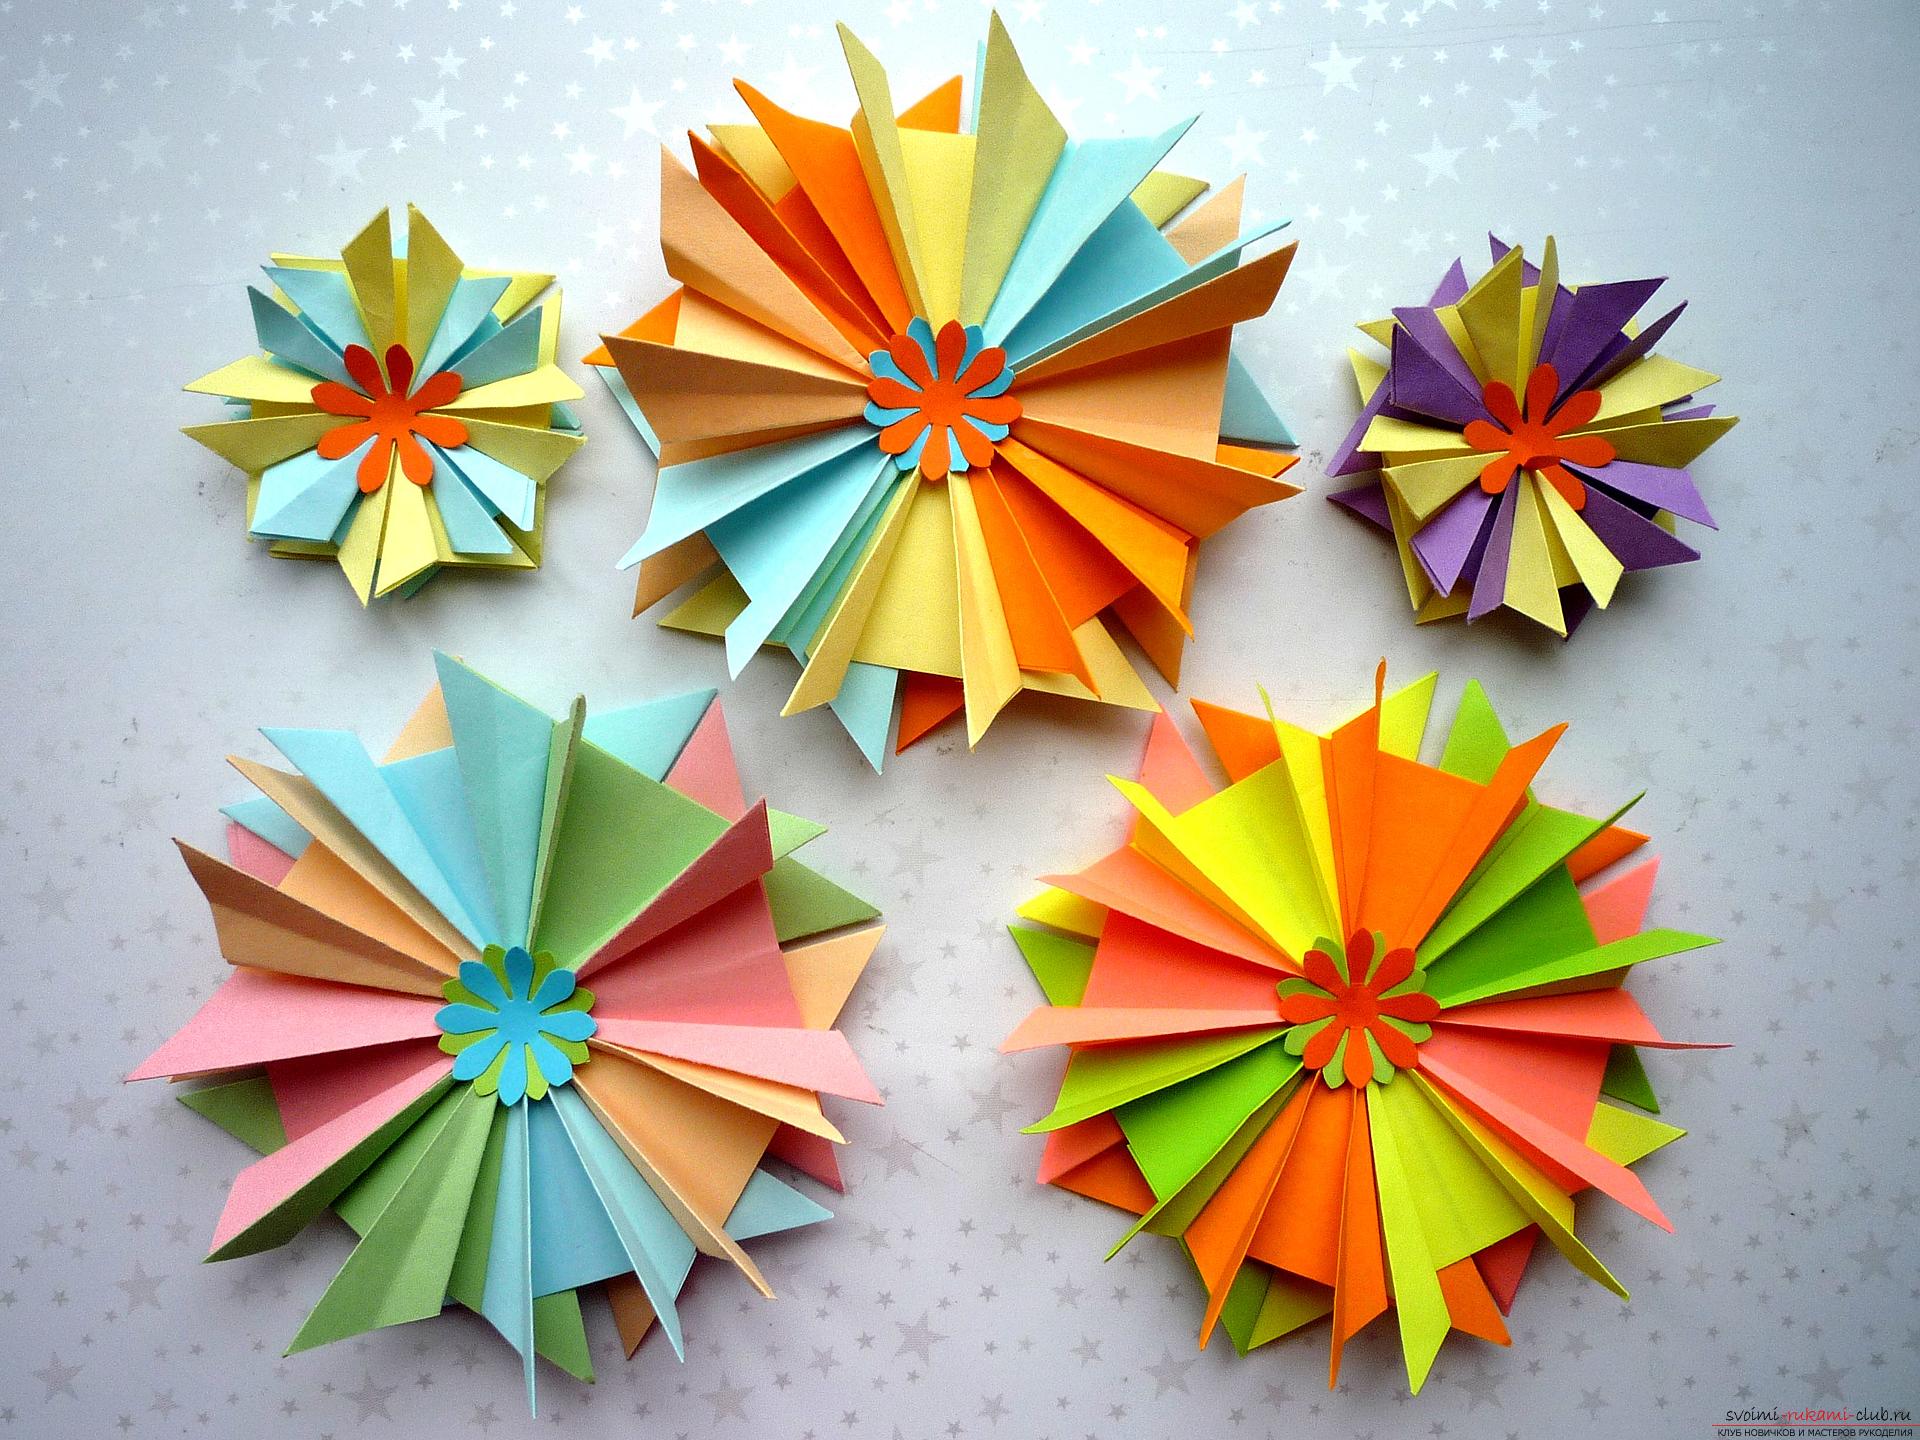 Мастер-класс расскажет как сделать модульную звезду оригами из бумаги своими руками. Фото №1